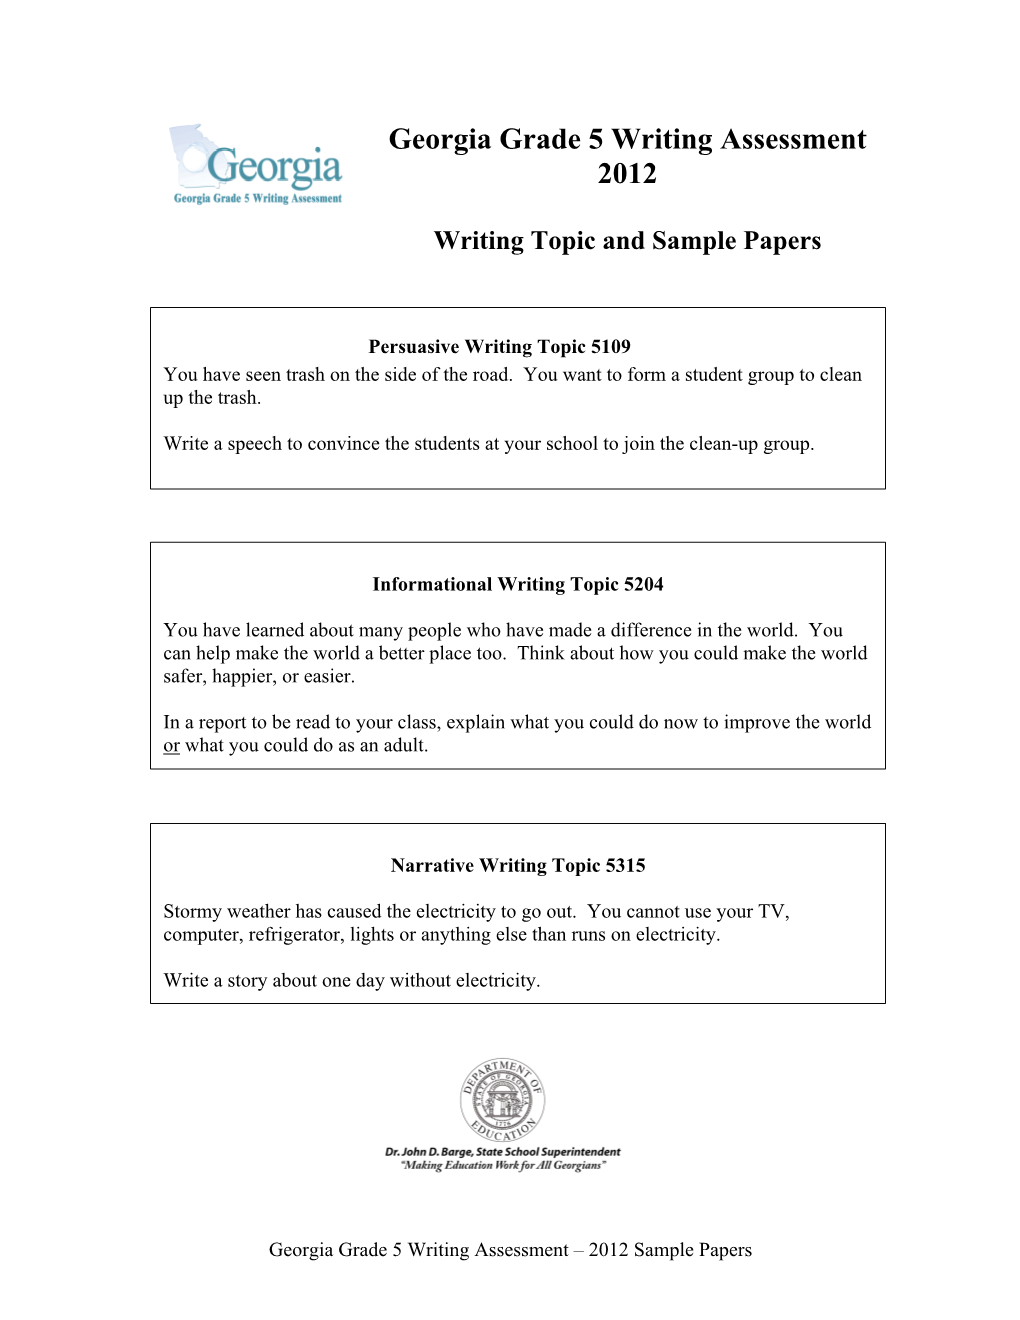 Georgia Grade 5 Writing Assessment 2012